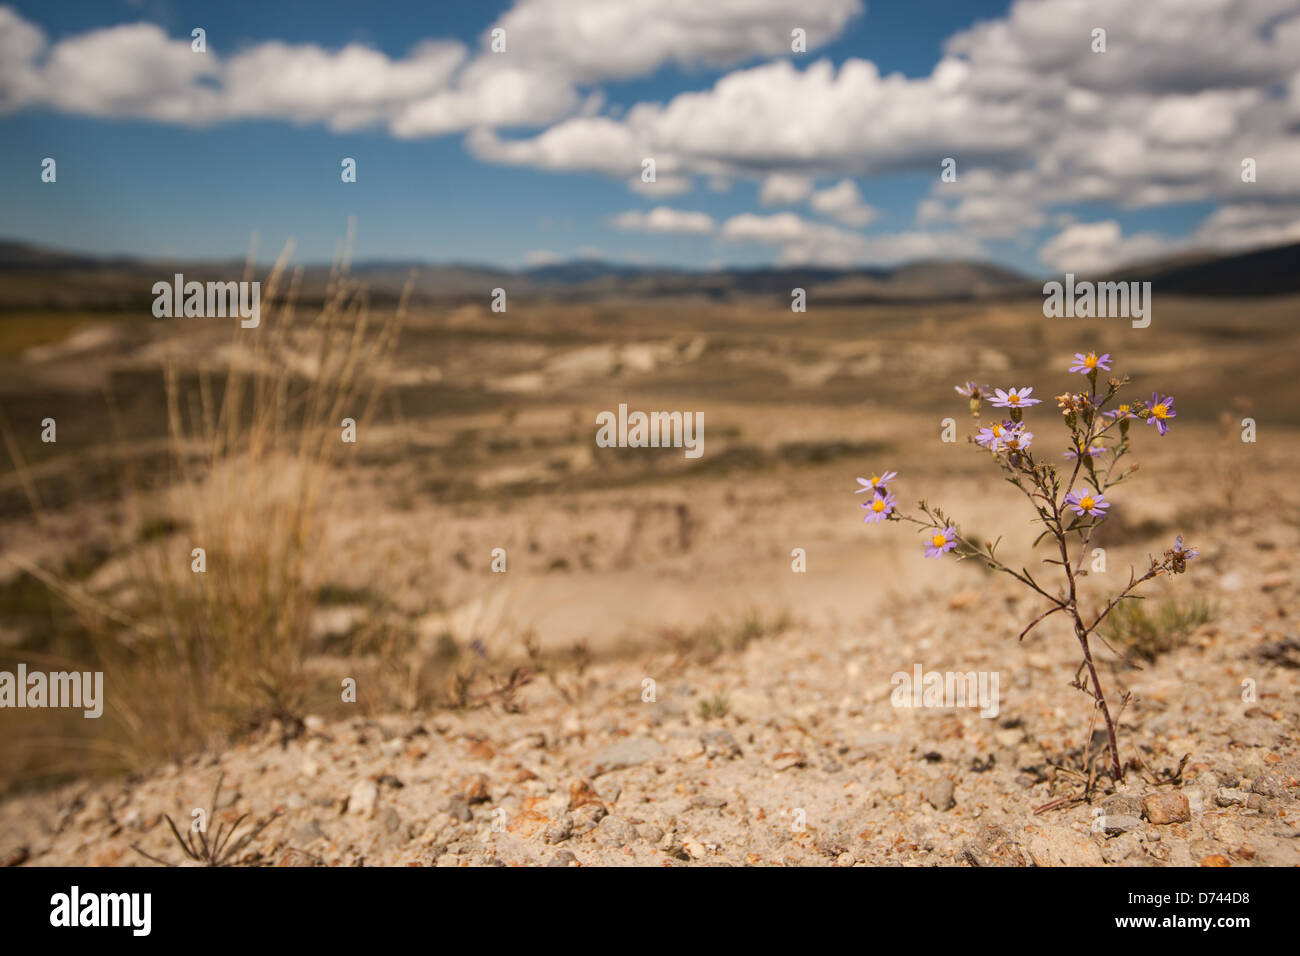 Fotografia di un viola Astor floricoltura in arido paesaggio del badlands. Foto Stock